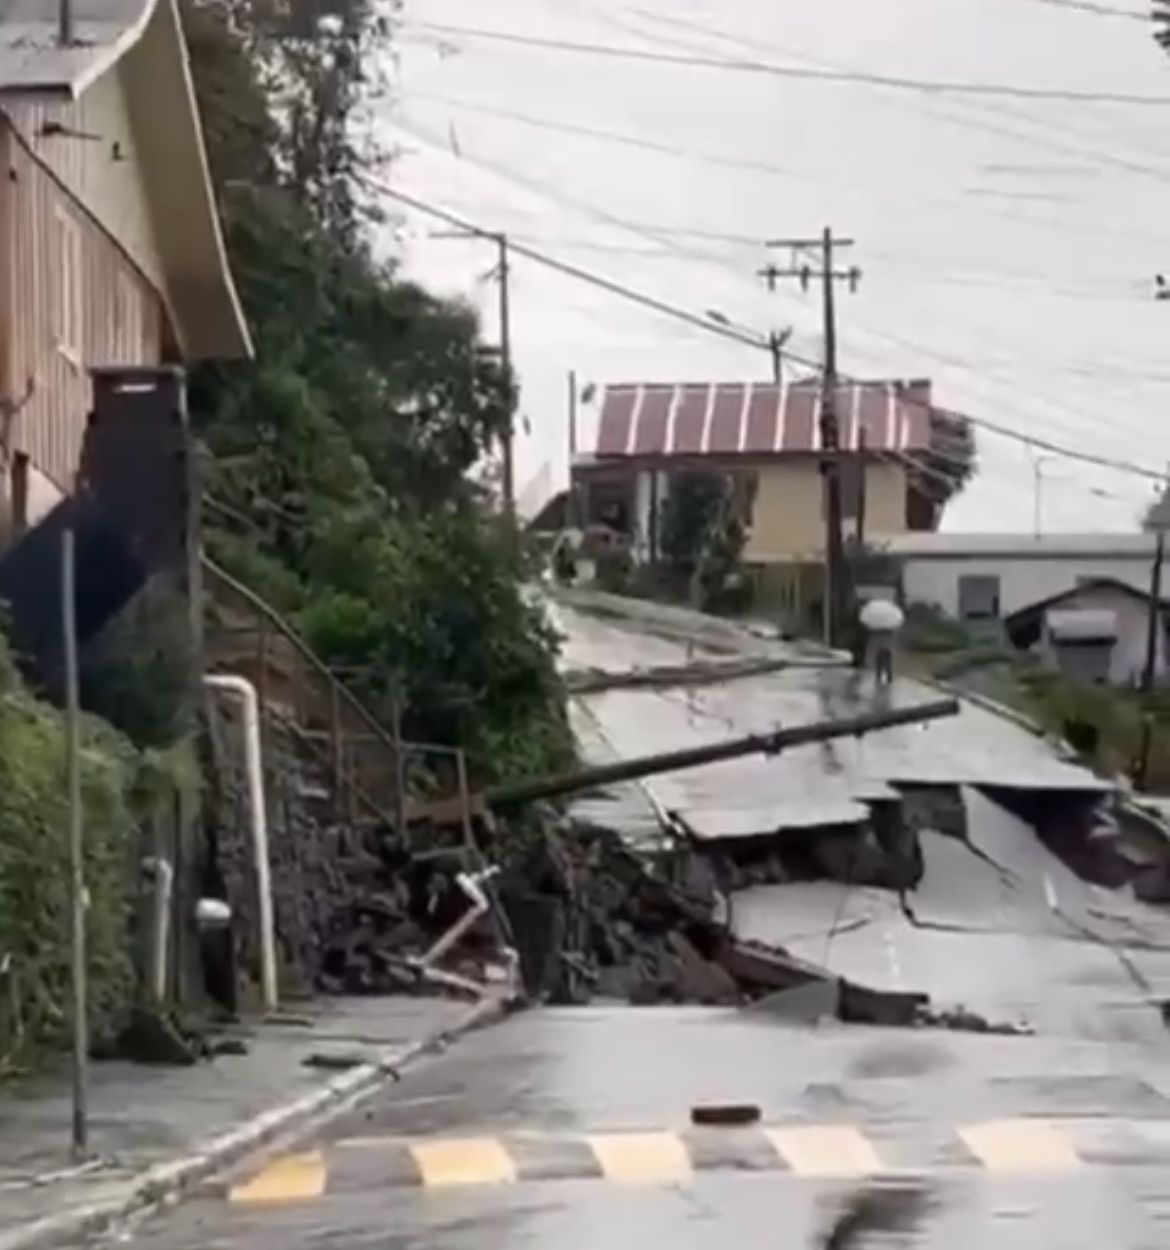 
Rua em Gramado, na Serra do Rio Grande do Sul, desmorona após fortes chuvas; VÍDEO
